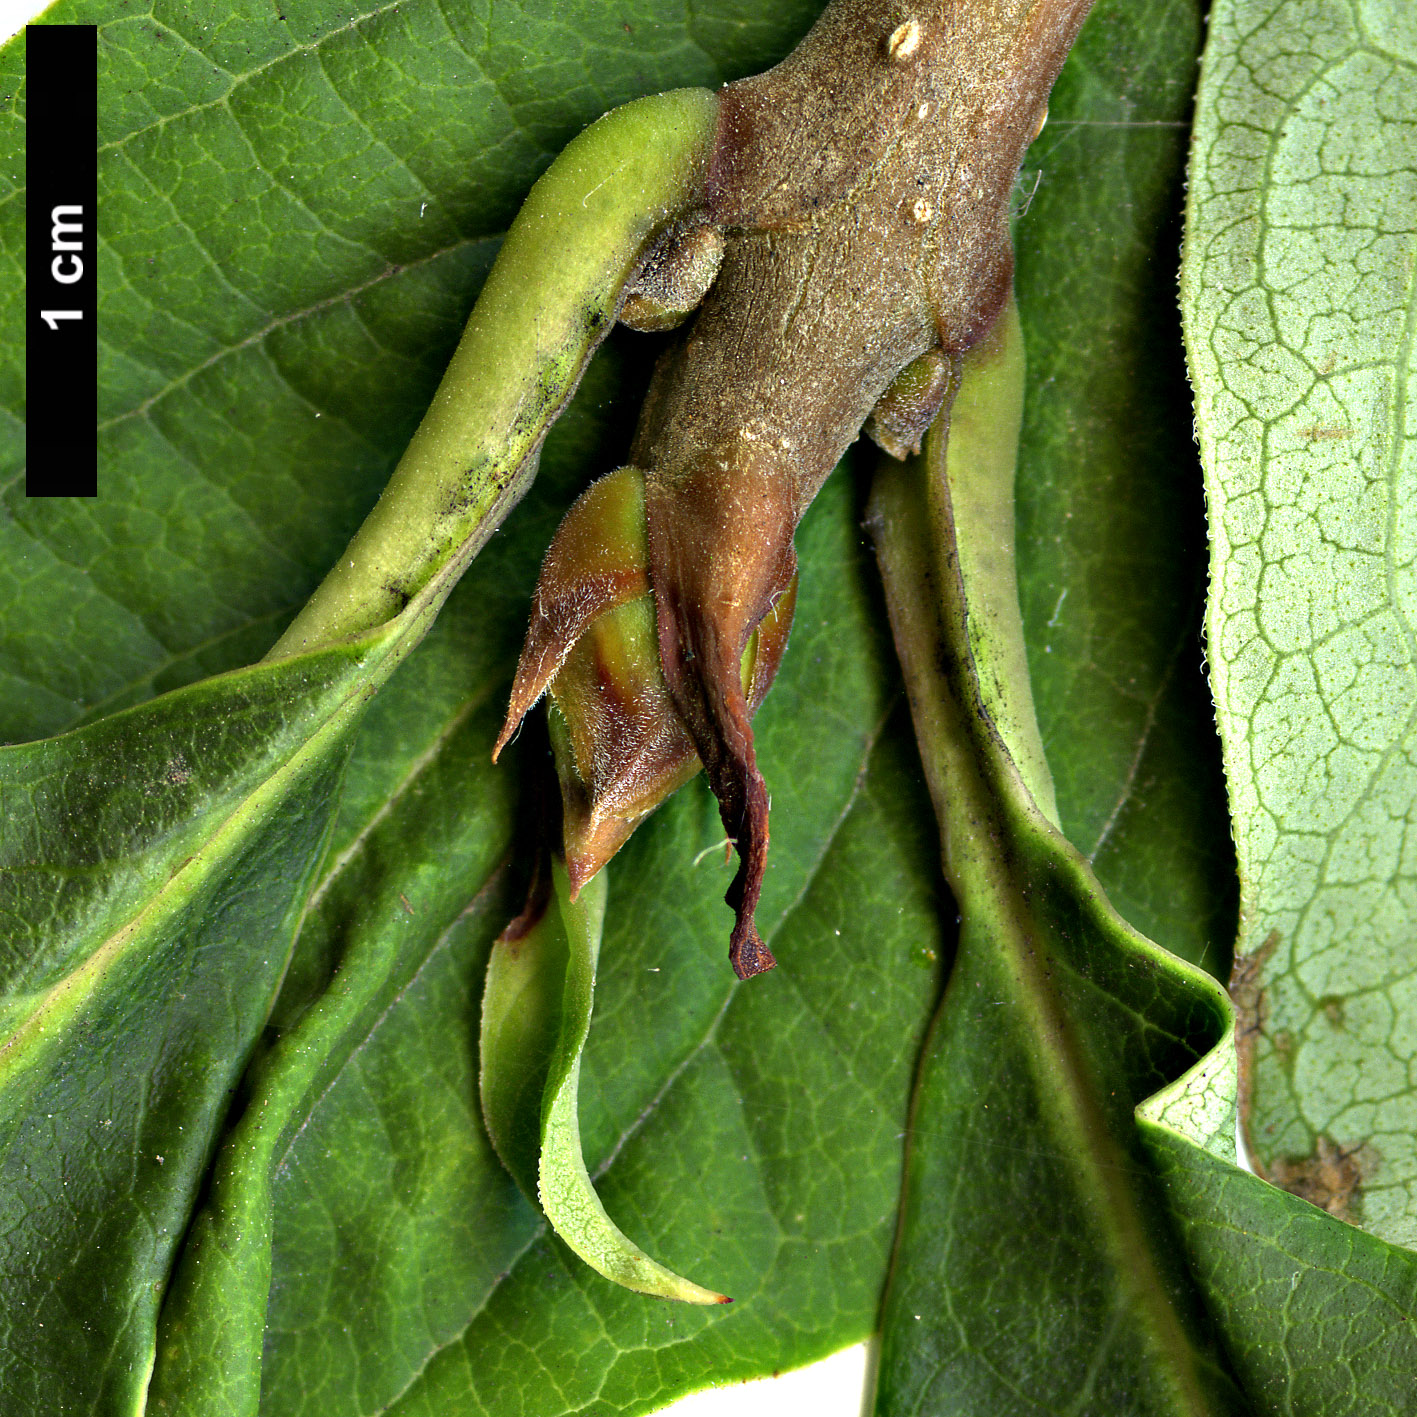 High resolution image: Family: Oleaceae - Genus: Syringa - Taxon: villosa - SpeciesSub: 'Alba'